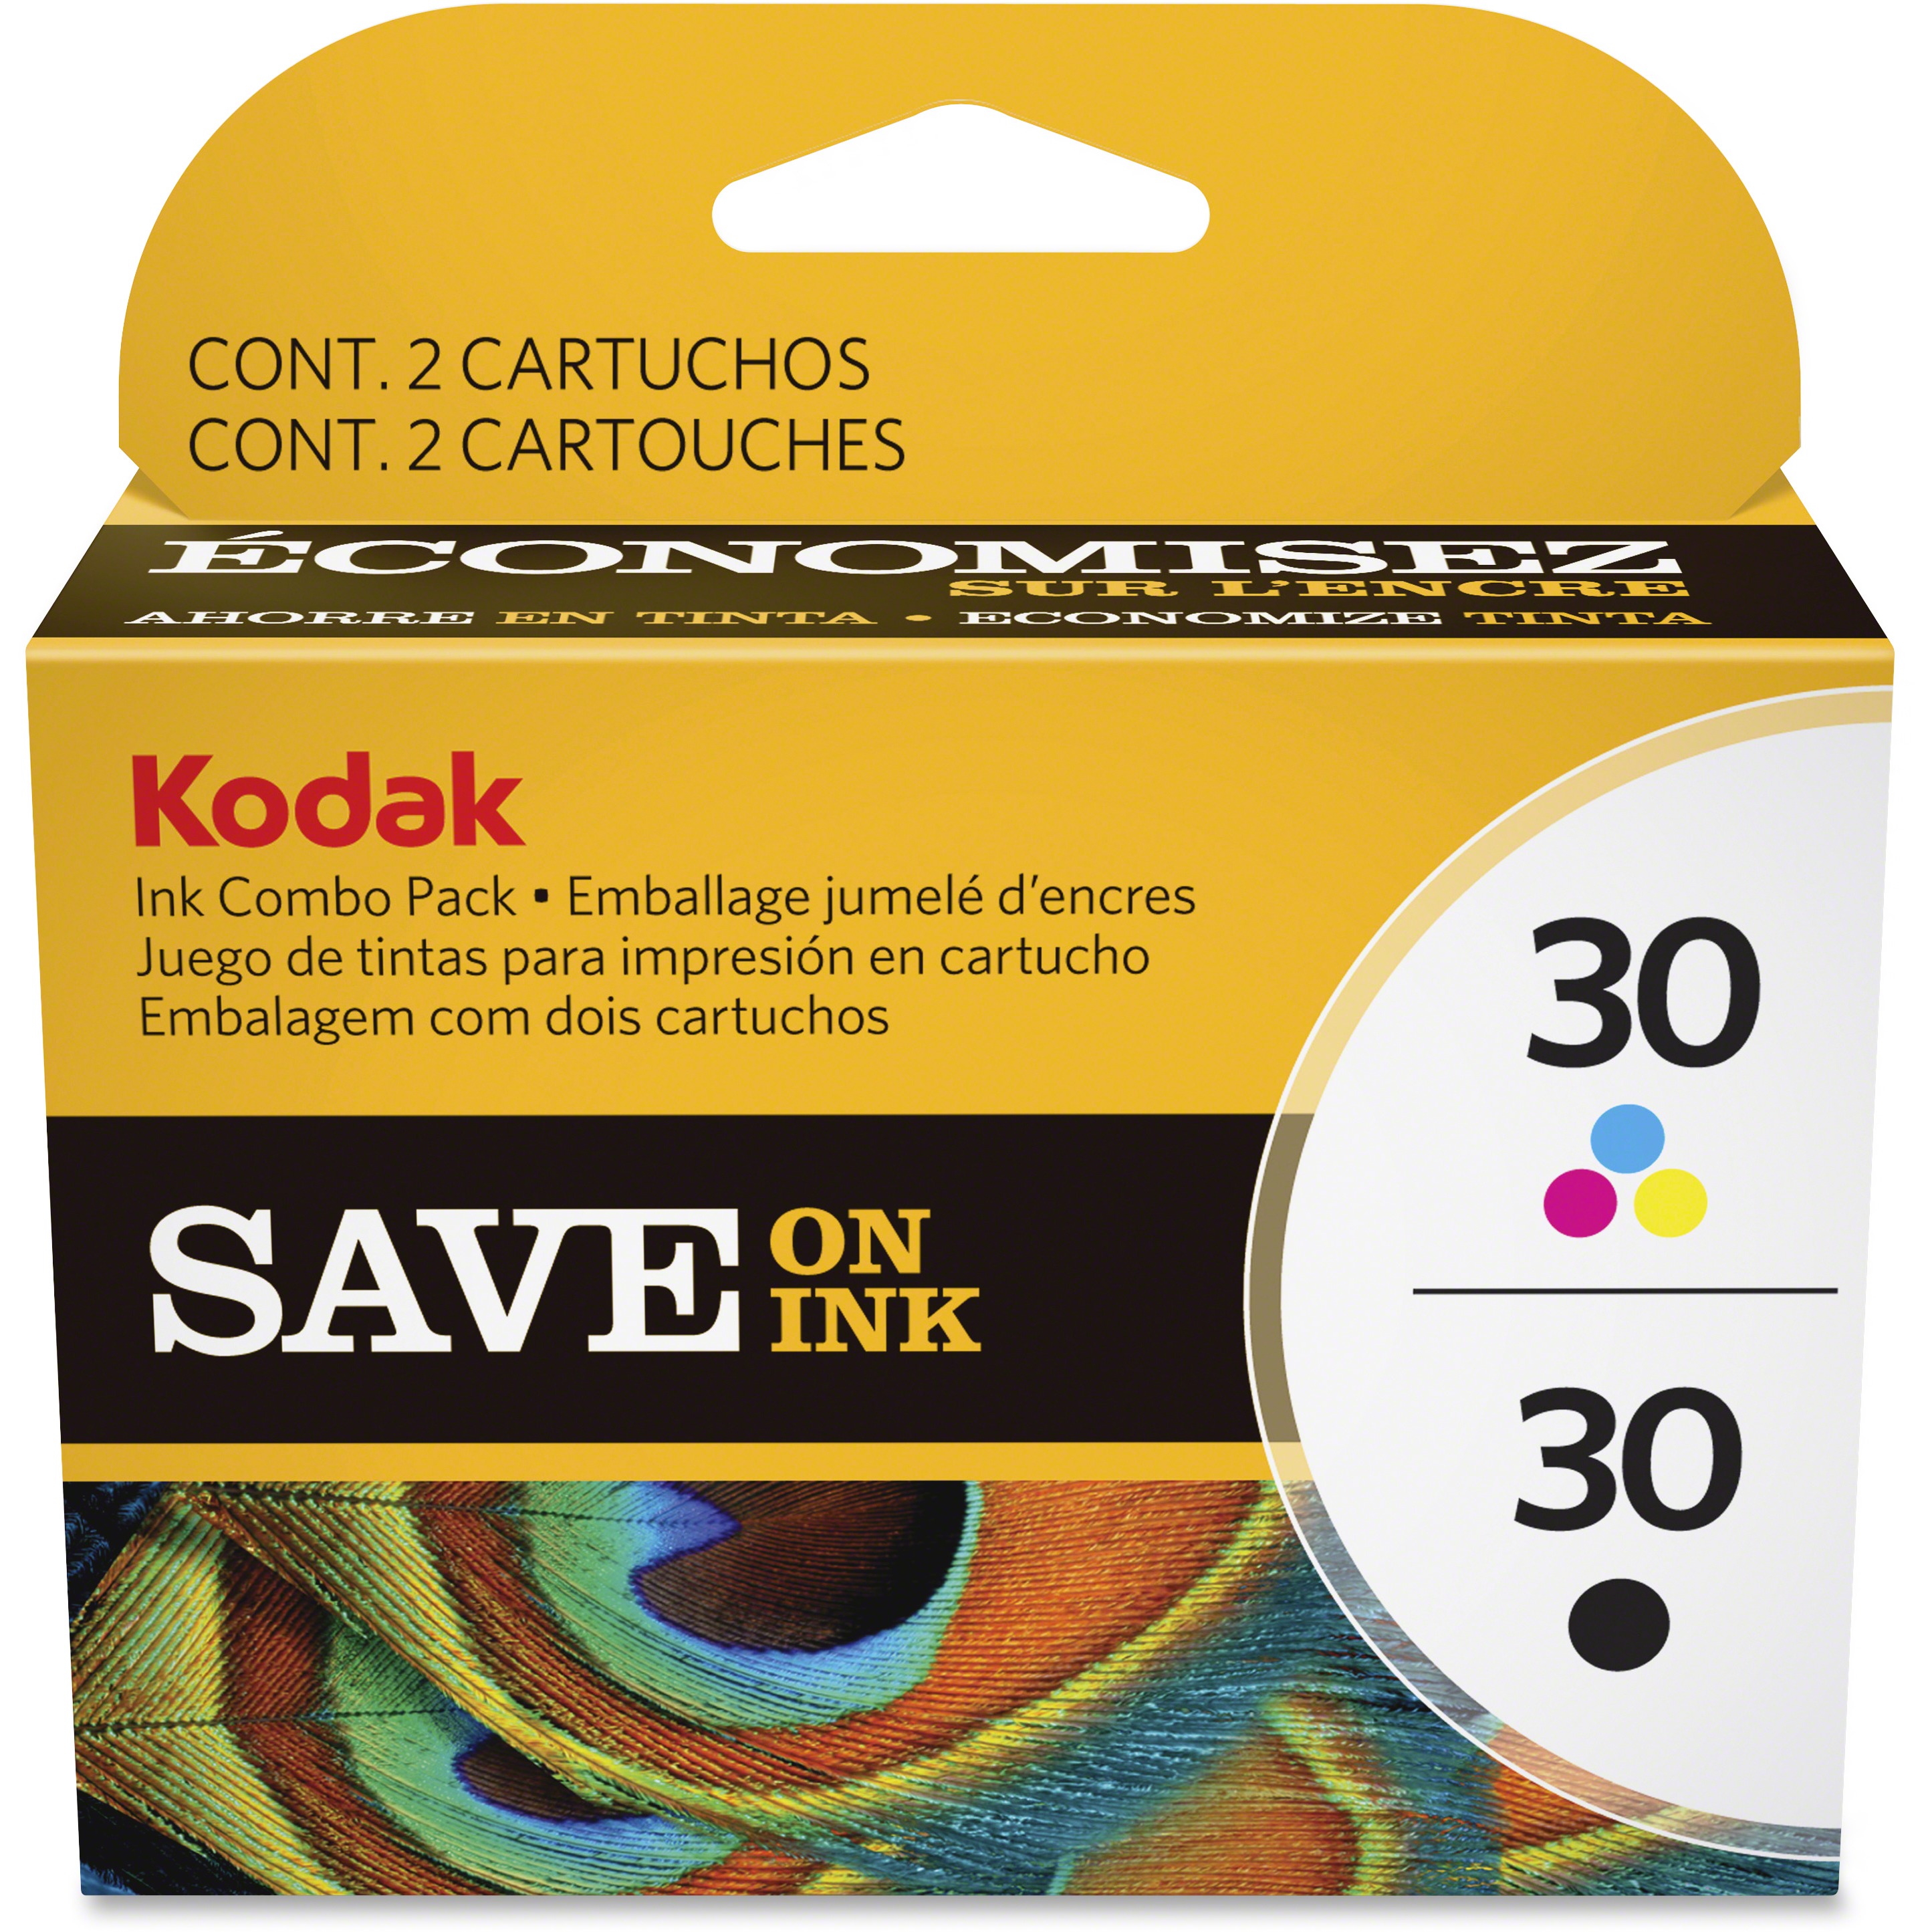 Kodak, KOD8781098, Black/Color Ink Combo Pack, 1 / Pack - image 1 of 2